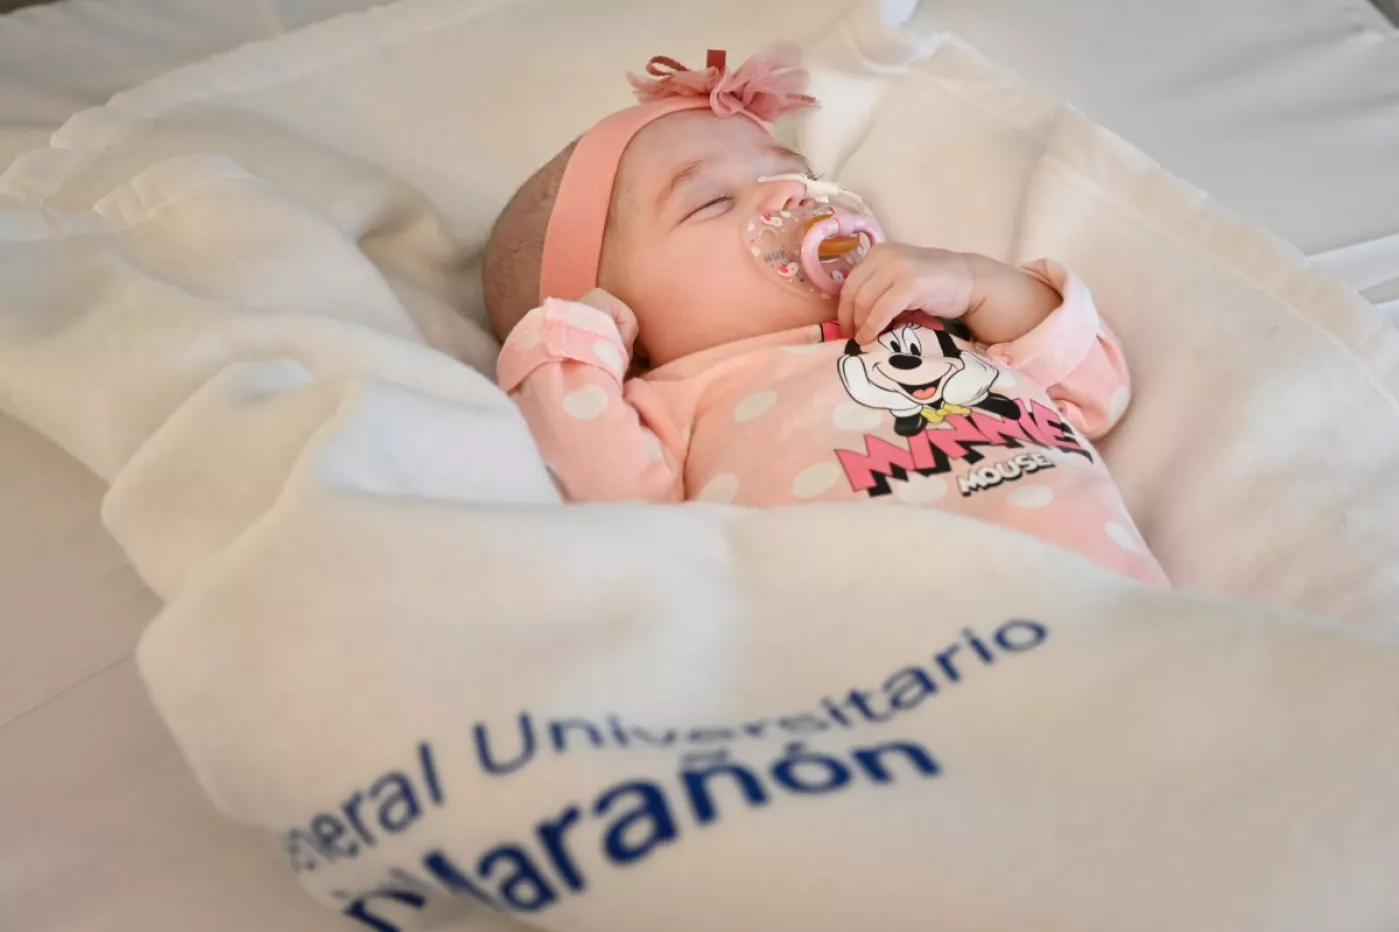 La pequeña Naiara, primera paciente en recibir un trasplante de corazón de donante en asistolia con incompatibilidad sanguínea.